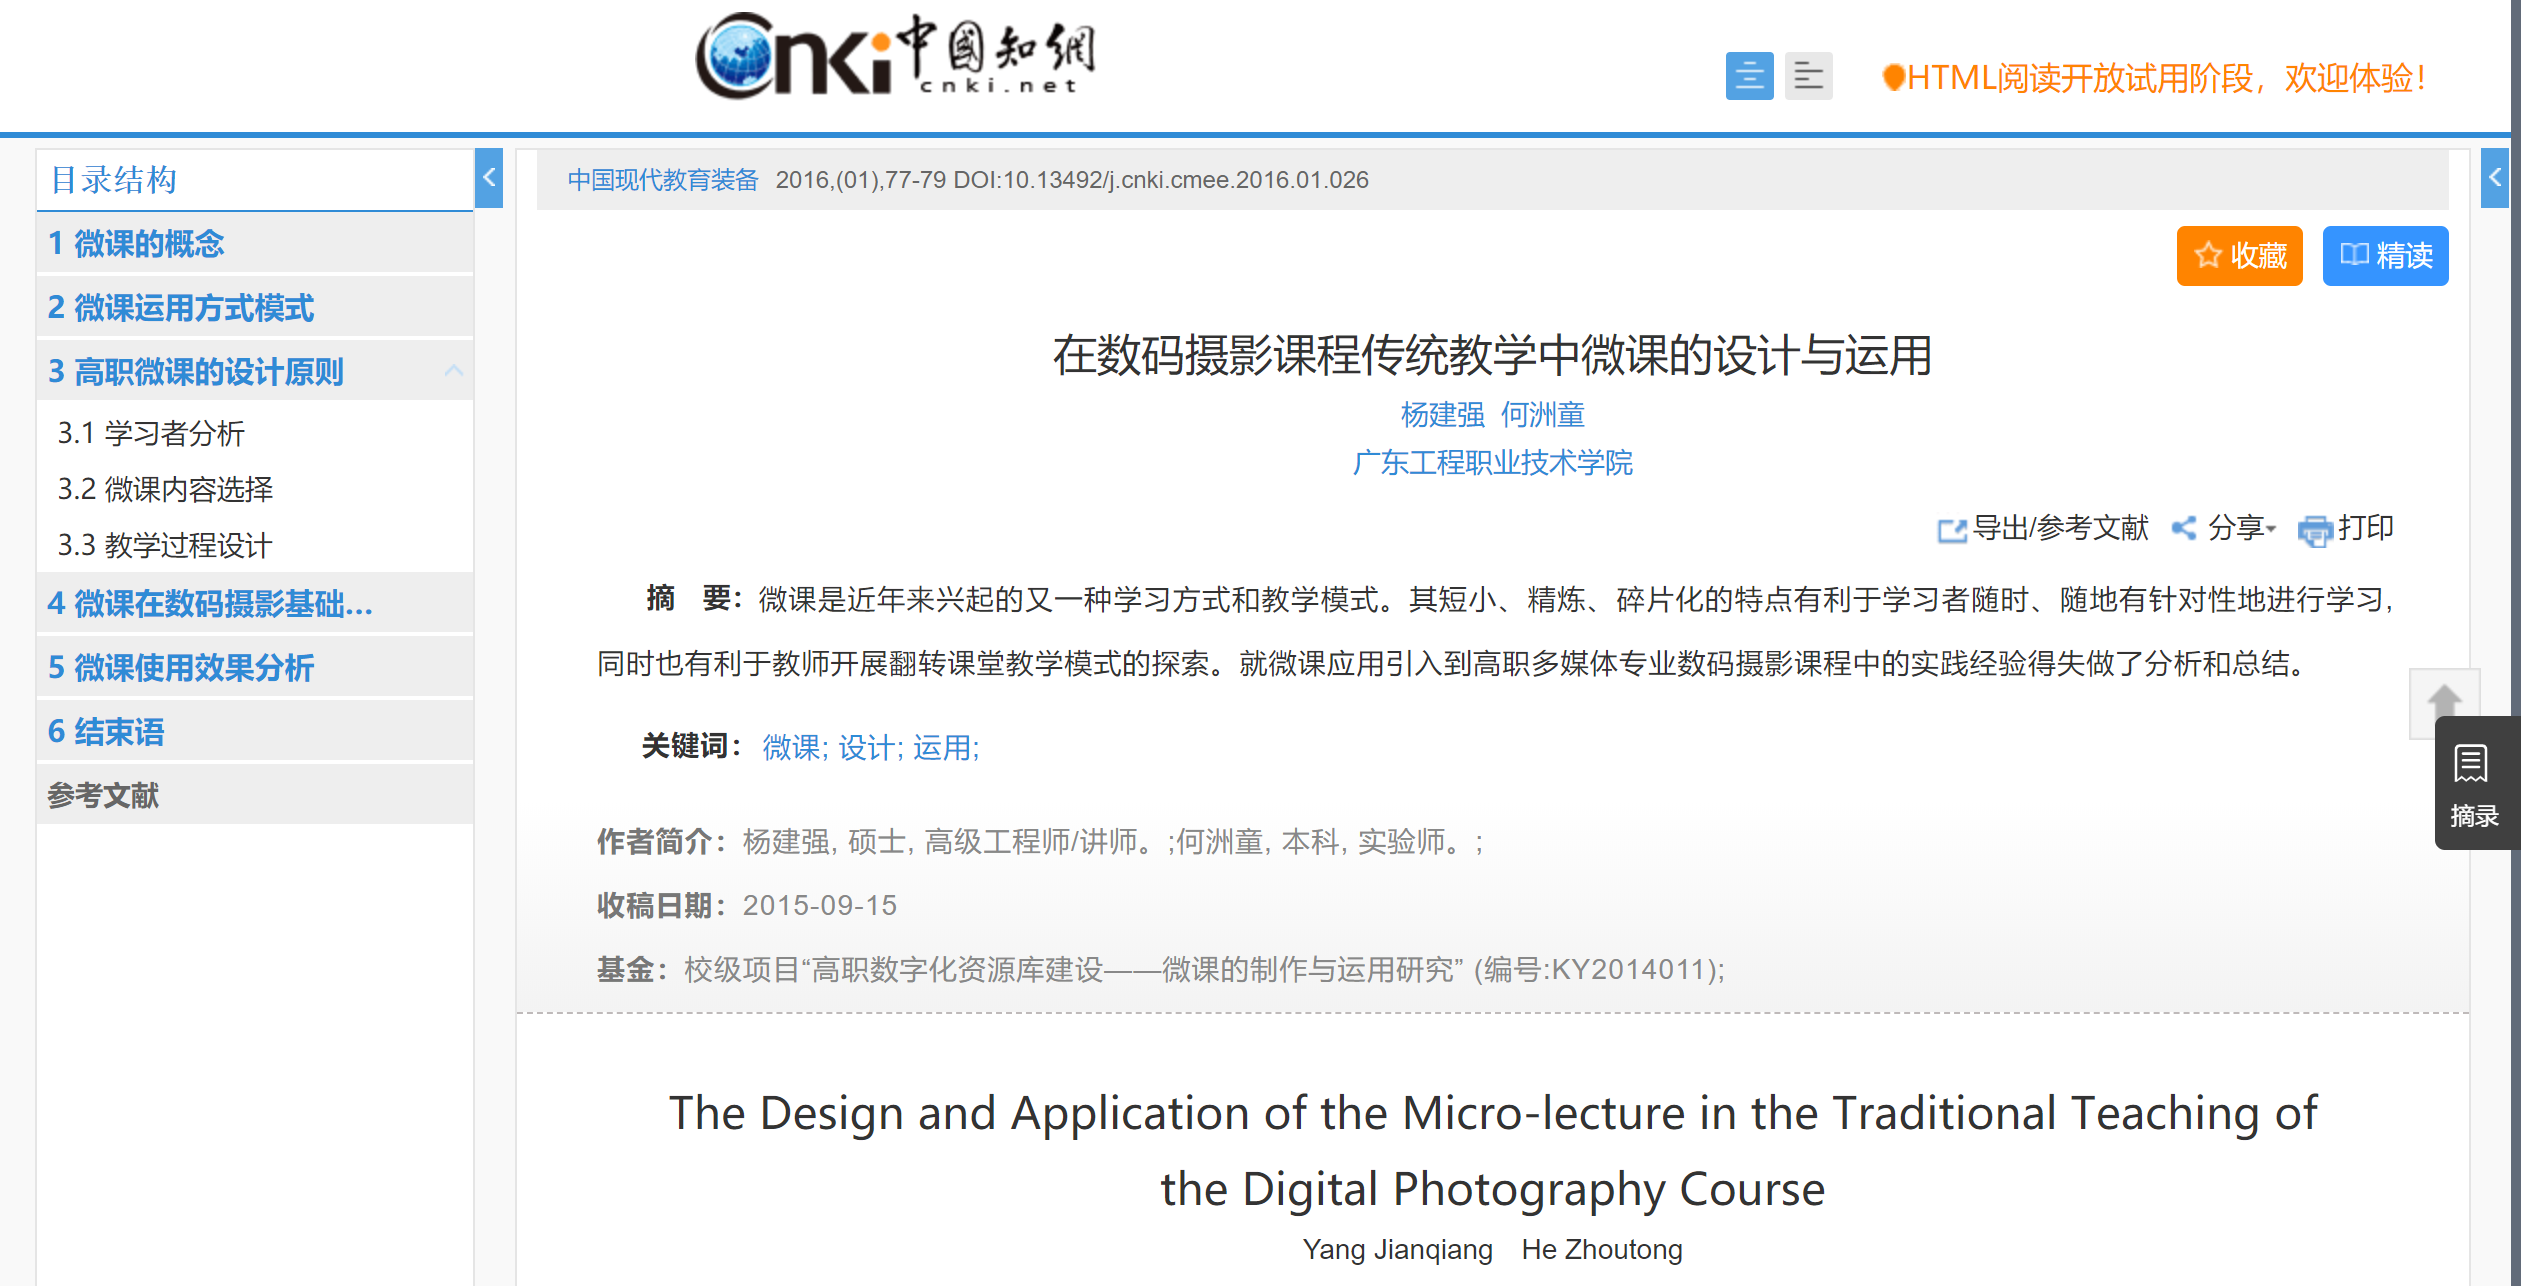 16、何洲童，在数码摄影课程传统教学中微课的设计与运用，《中国现代教育装备》.png